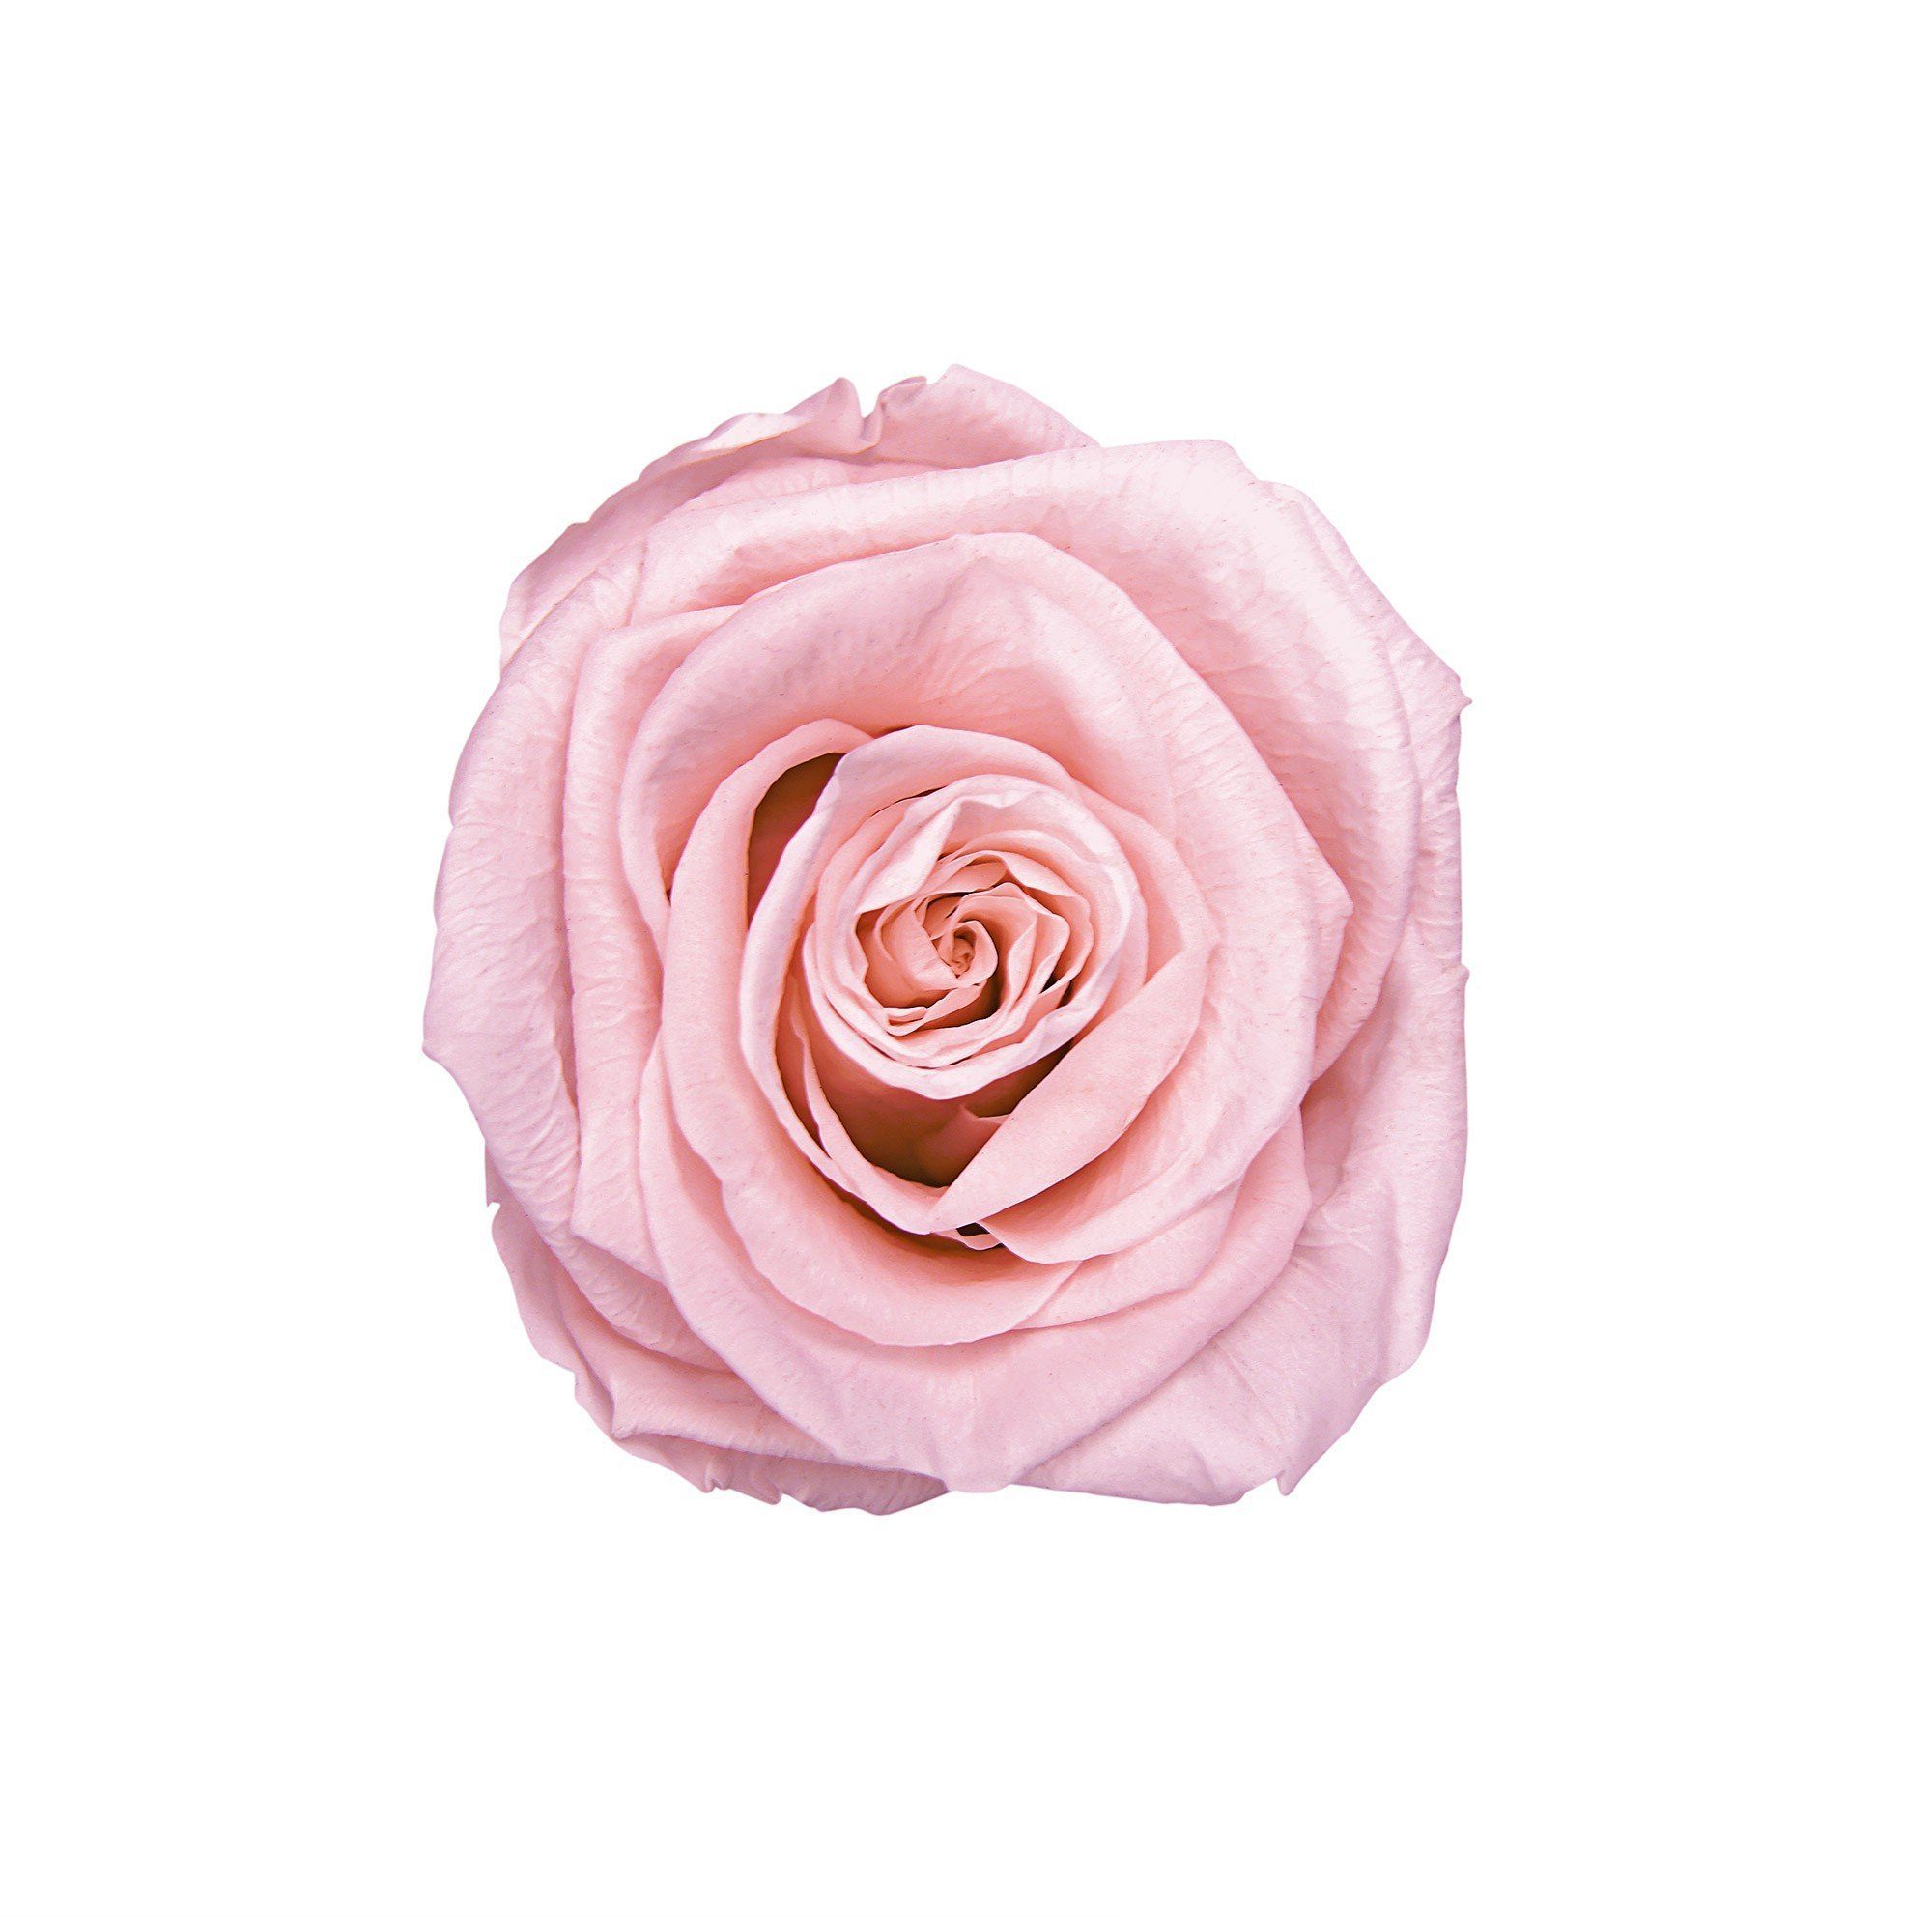 3 Echte, cm Rose Höhe I Holy haltbar Infinity I konservierte Kunstblume 1er Infinity by weiß Blush Blumen Runde mit Rosenbox Jahre Richter Flowers, duftende Raul in 9 I Rose, Pink